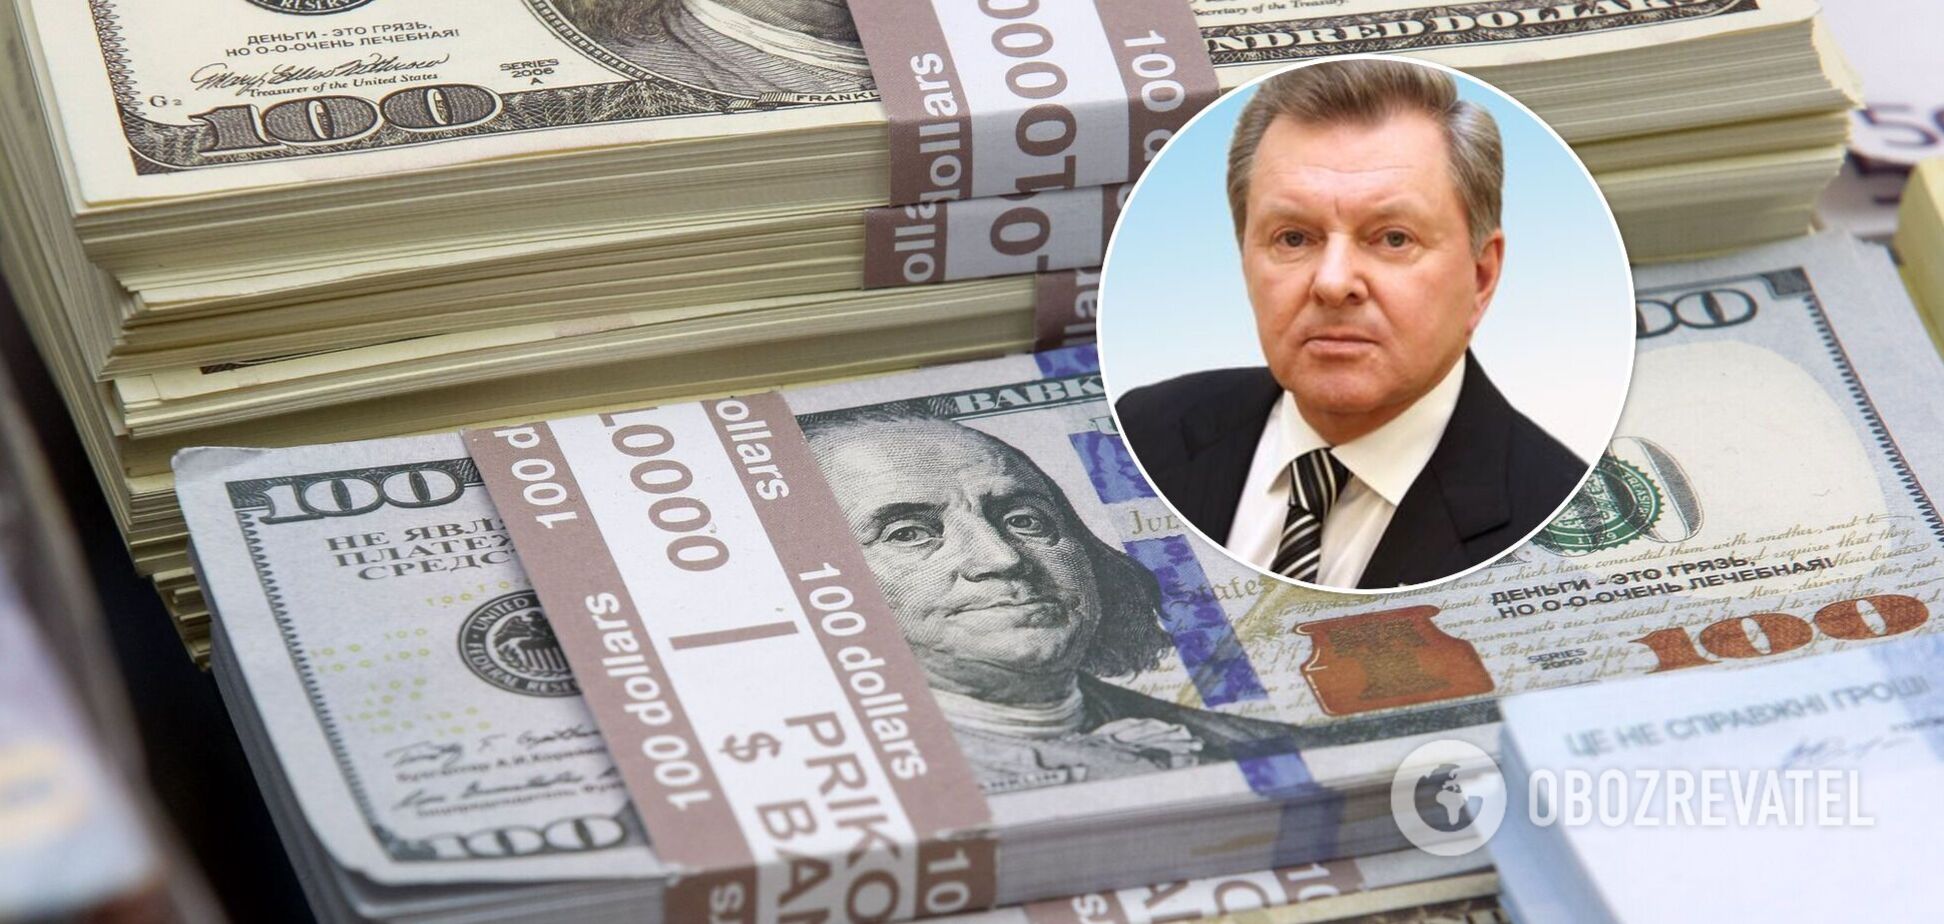 Друг главы Минобороны РФ купил недвижимость в Крыму почти на $13 млн – СМИ